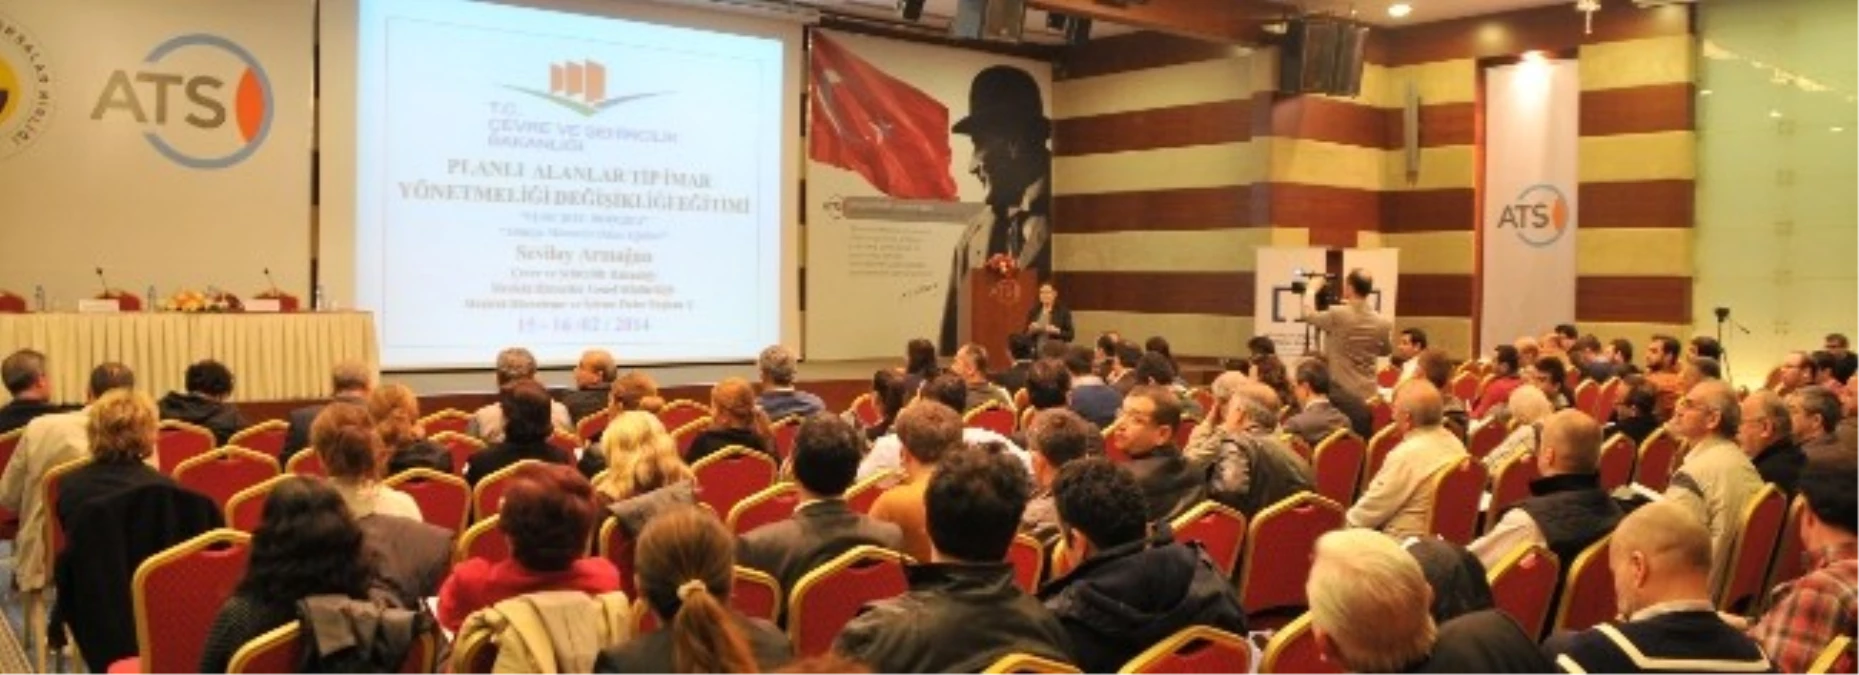 Atso\'da "Planlı Alanlar Tip İmar Yönetmeliği" Toplantısı Yapıldı